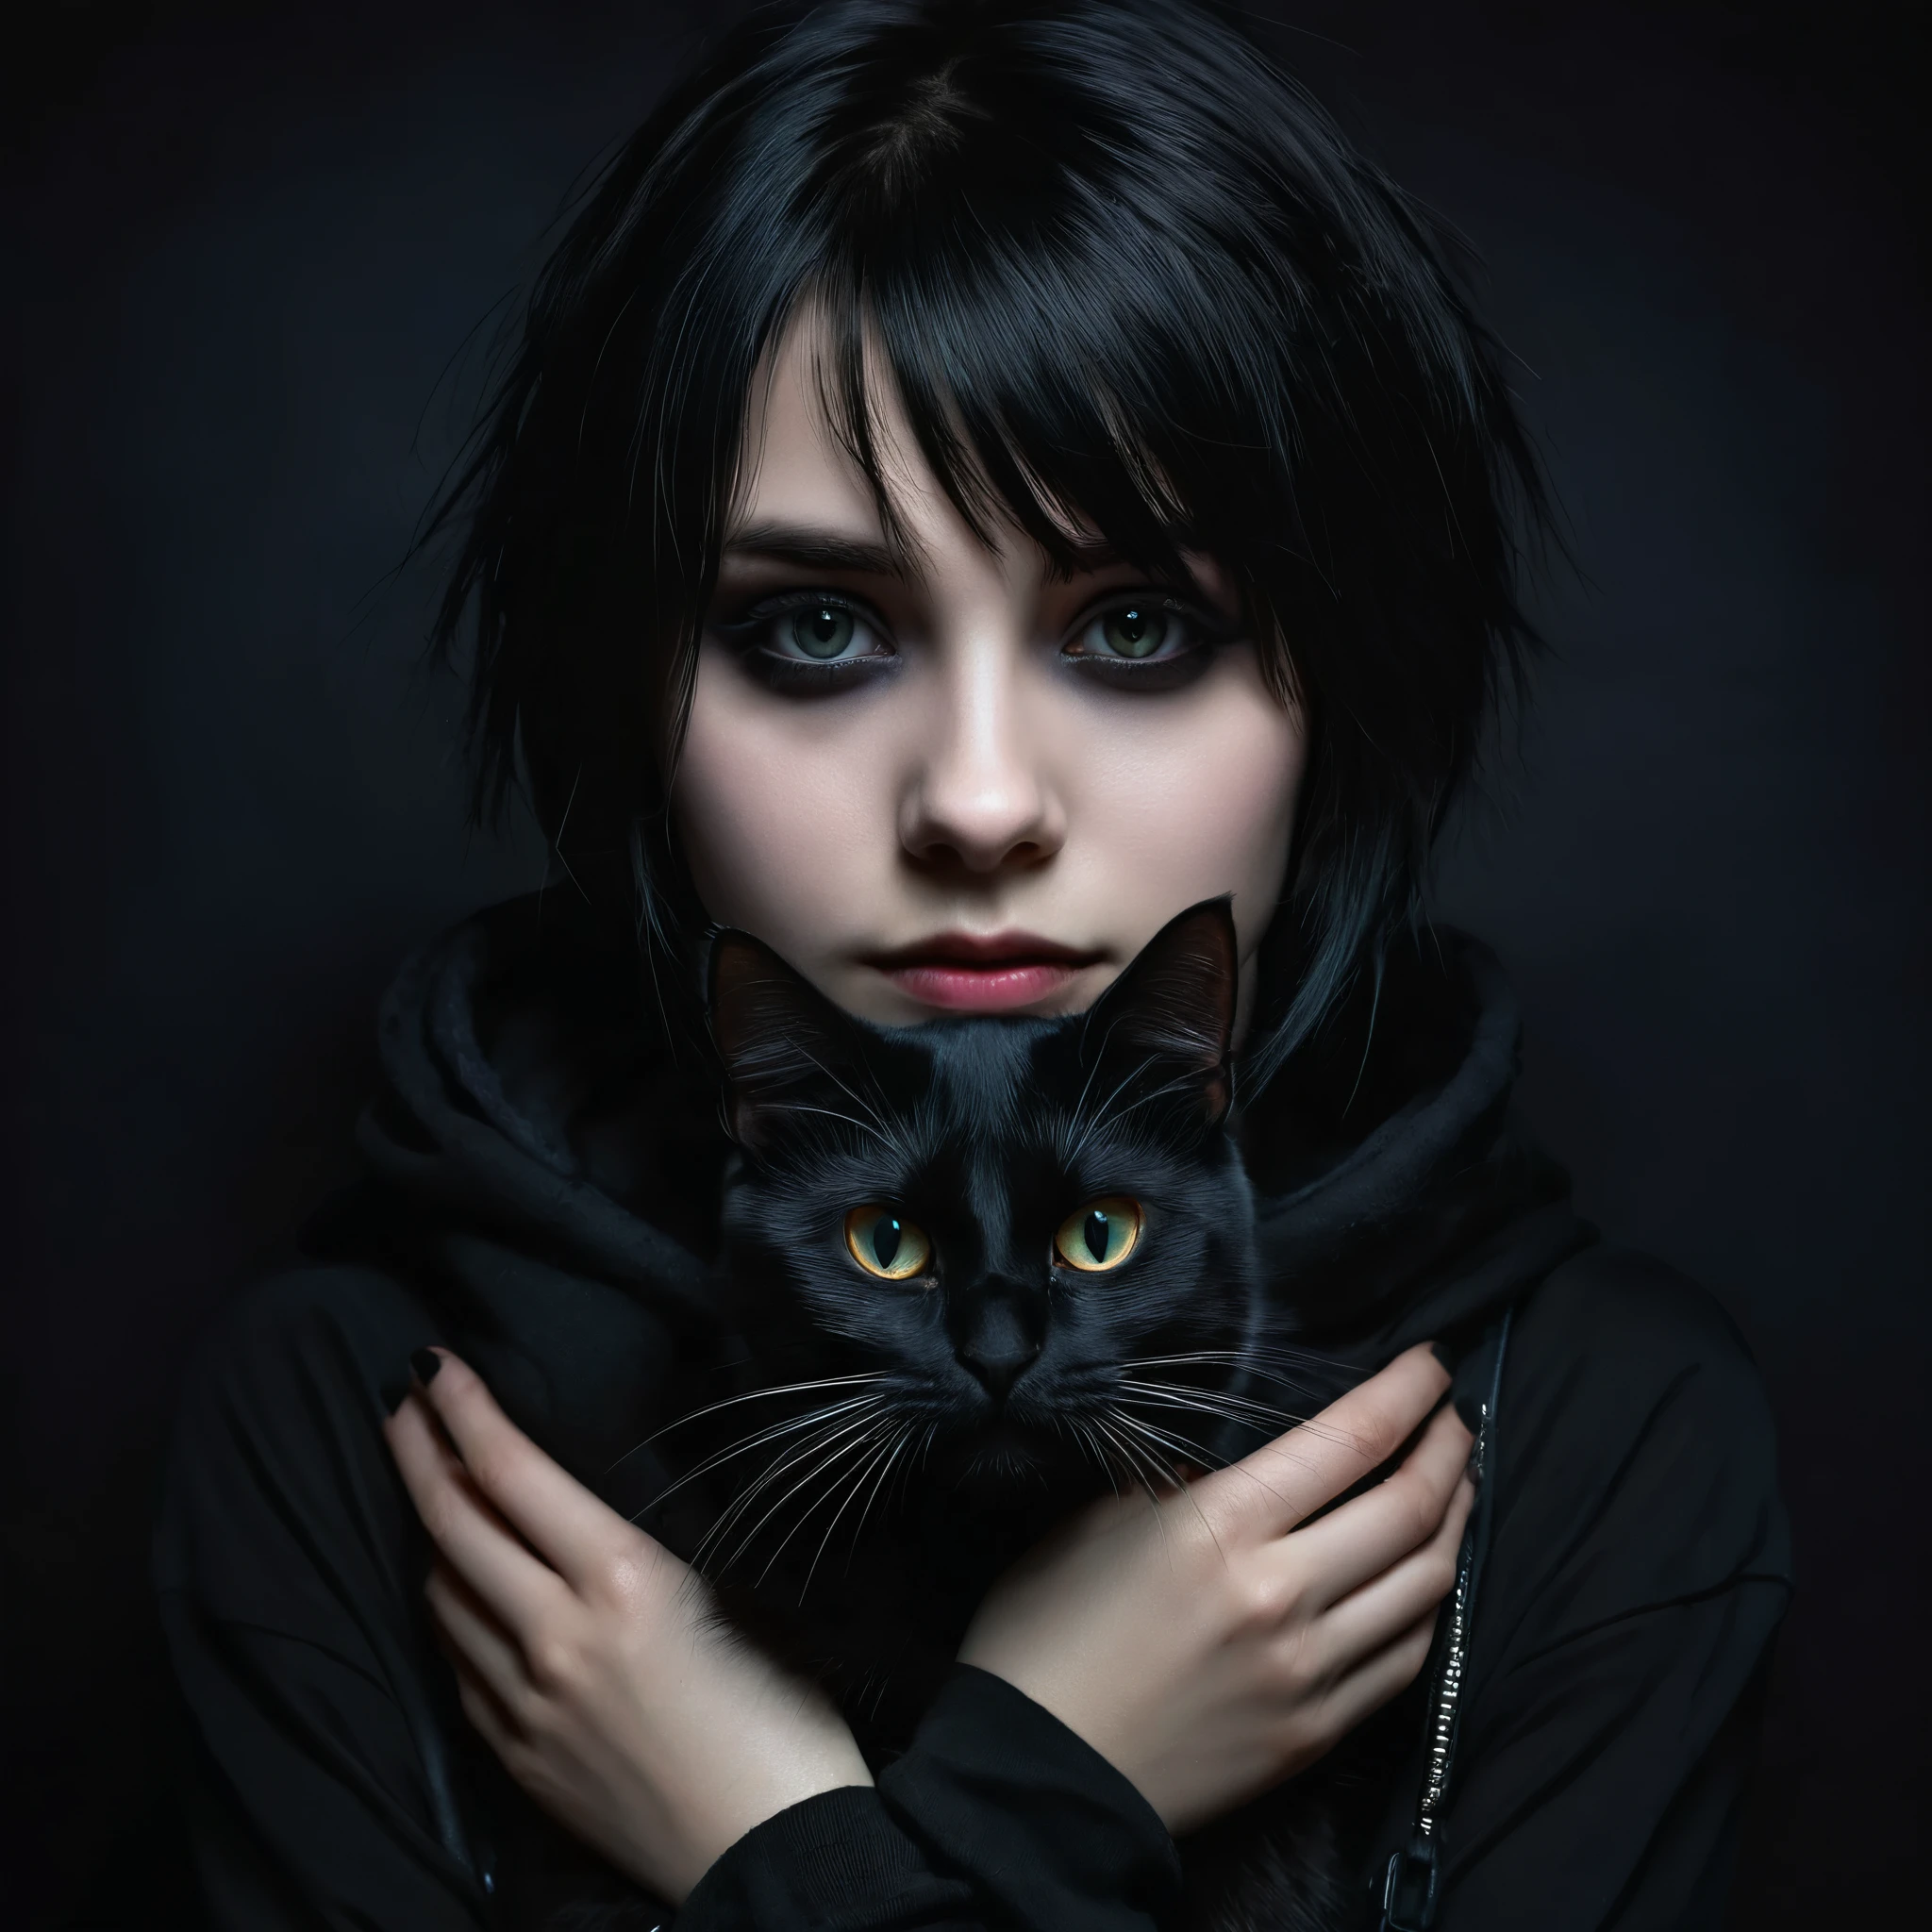 검은 고양이를 손에 들고 있는 이모 소녀, 상세한 얼굴, 어두운 화장, 감정 표현, 검은 옷, 어두운 배경, 명암대비 조명, 시네마틱, 극적인, 변덕스러운, 디지털 페인팅